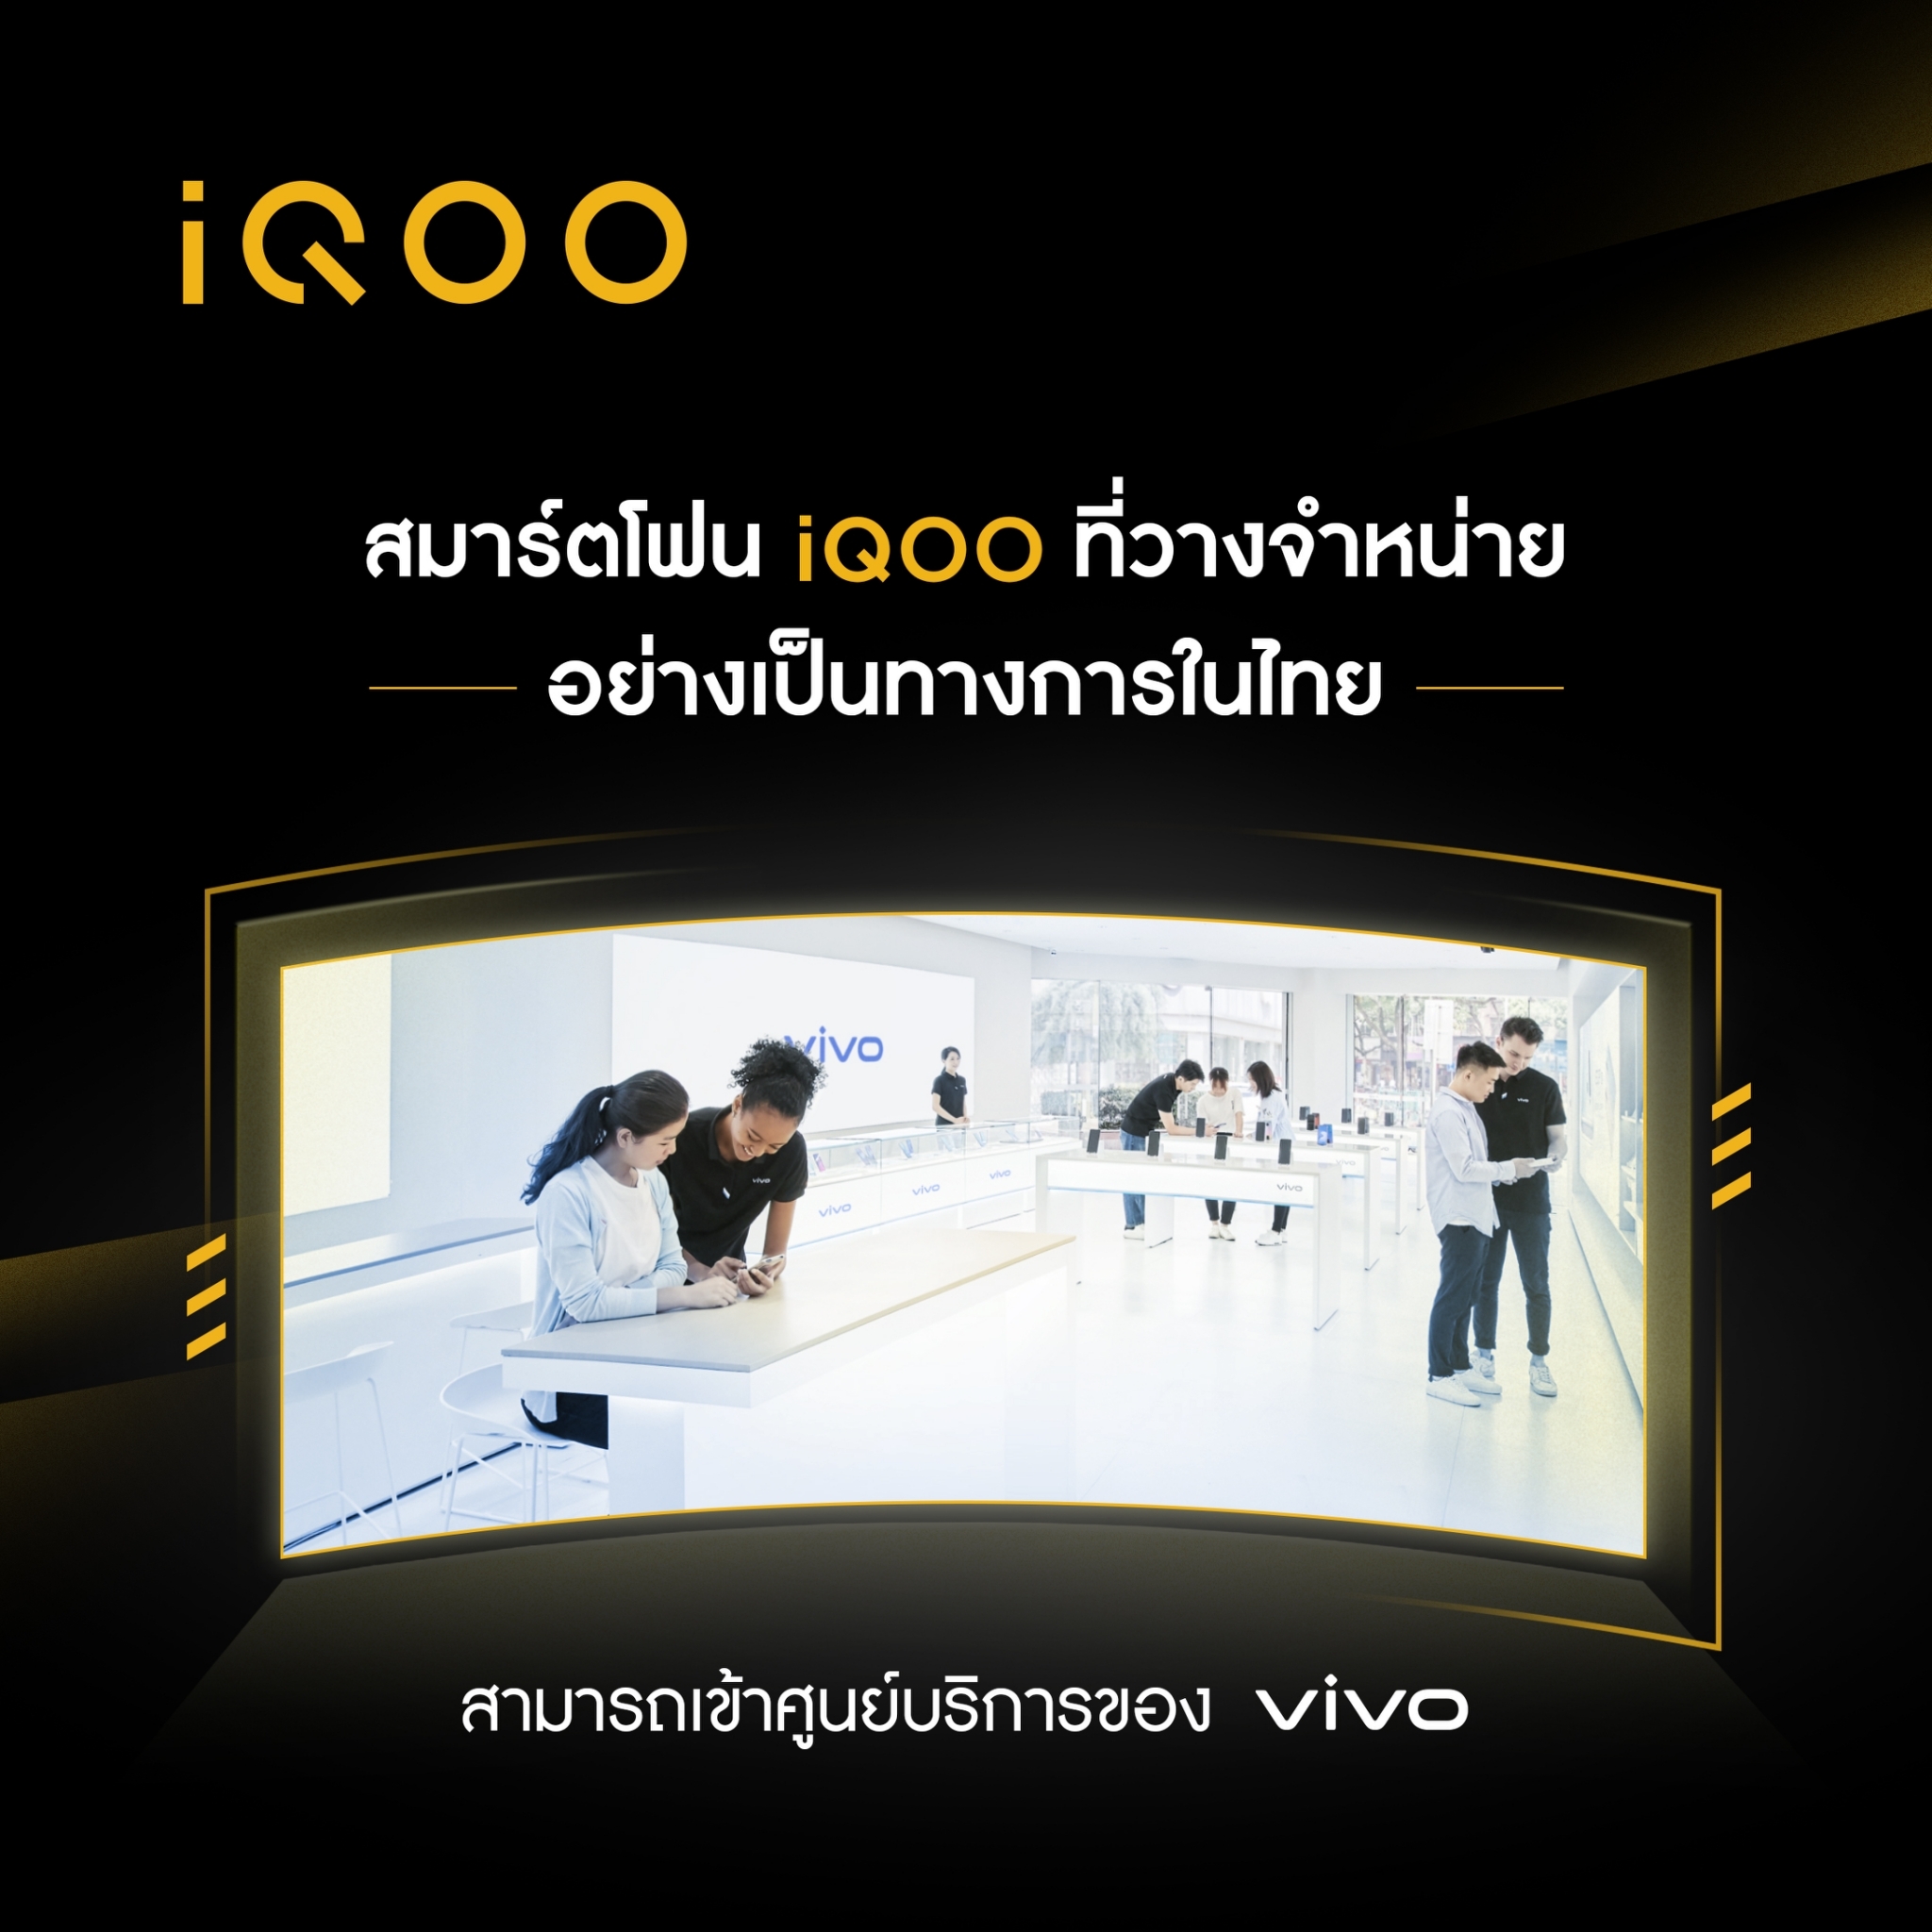 ทำความรู้จัก “iQOO” สมาร์ตโฟนตัวท็อปแบรนด์ใหม่ภายใต้ vivo ให้มากกว่าความแรง! เตรียมบุกไทยธันวาคมนี้